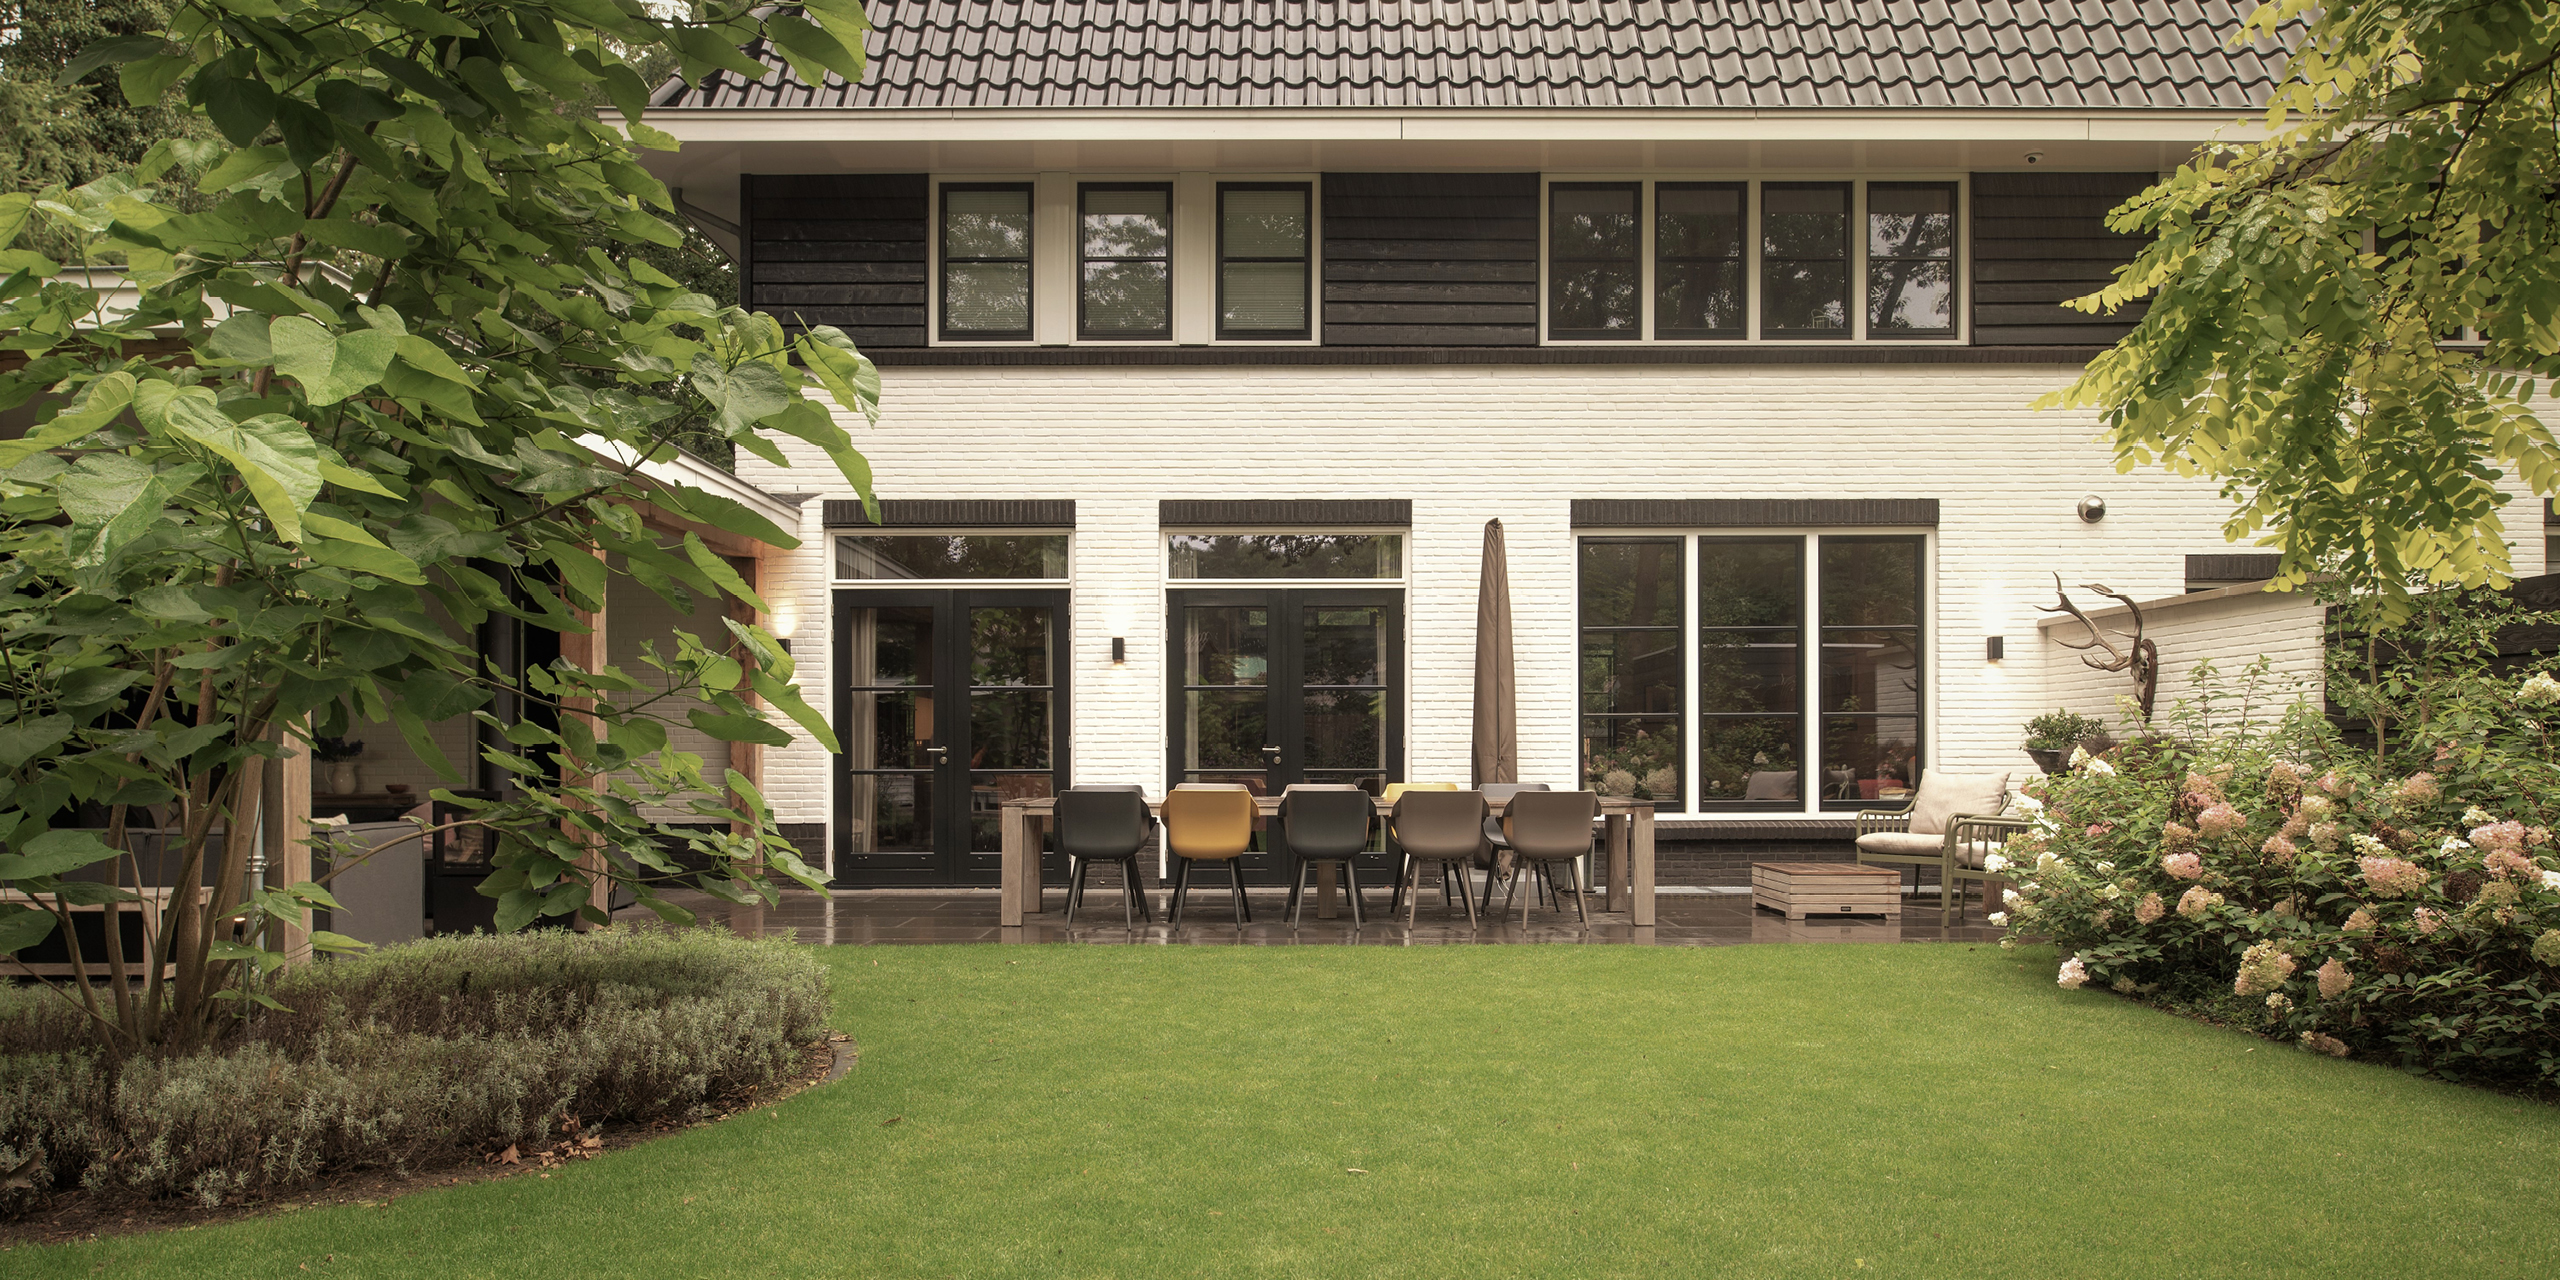 Buytengewoon tuin in Zeist met gazon, terras, tuintafel en veranda.